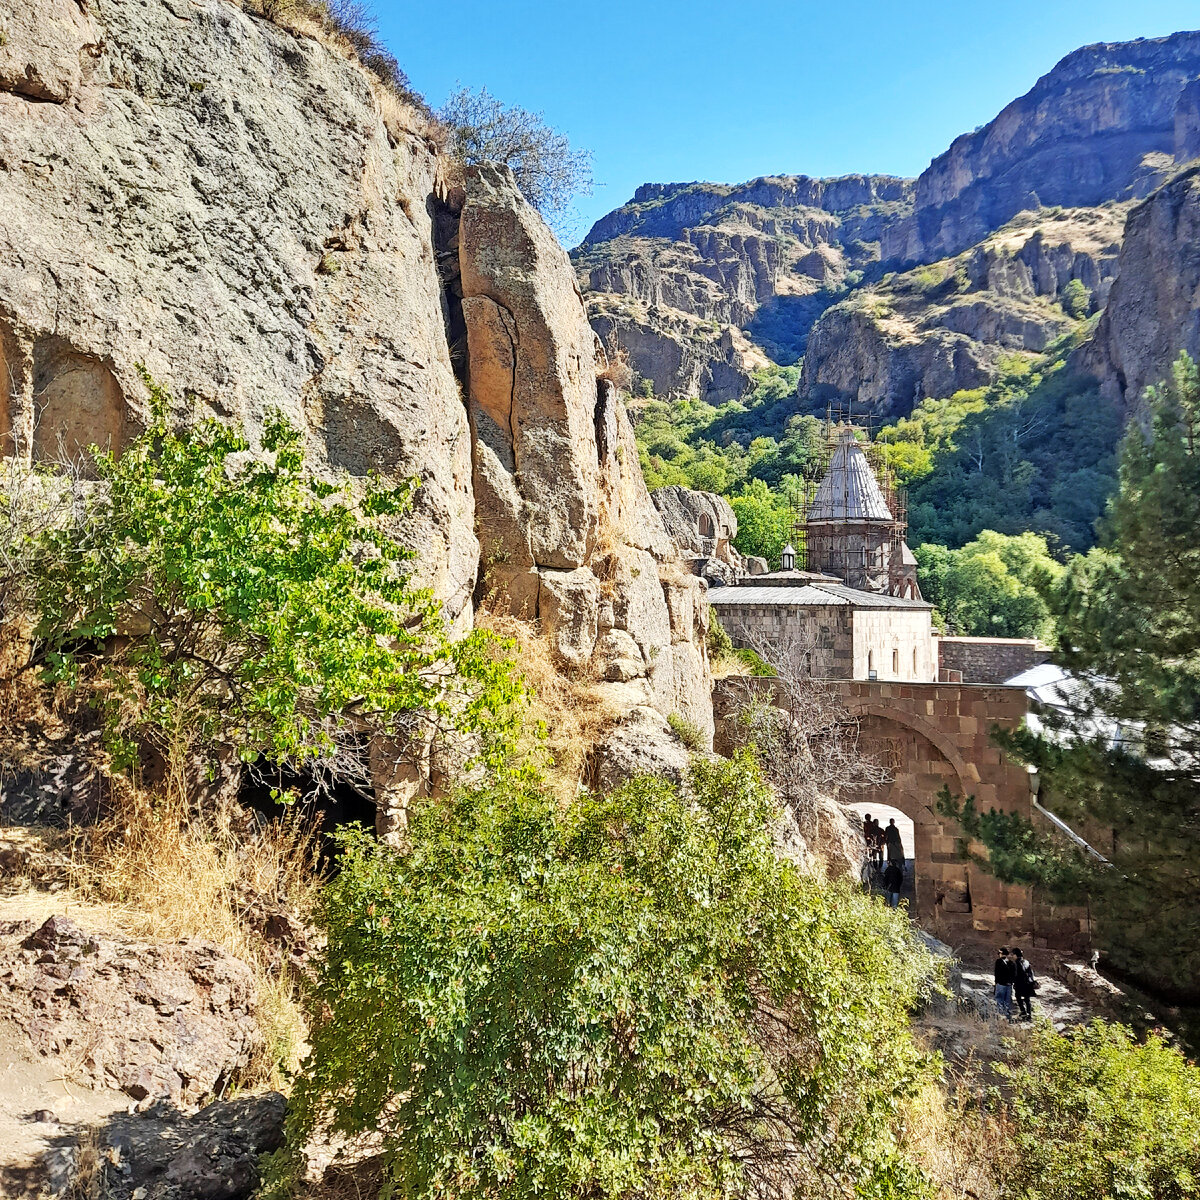 Вход в Гегард бесплатный, парковка тоже. Фото сделано от загадочной часовни №12. Монастырь внесён ЮНЕСКО в список объектов Всемирного культурного наследия.